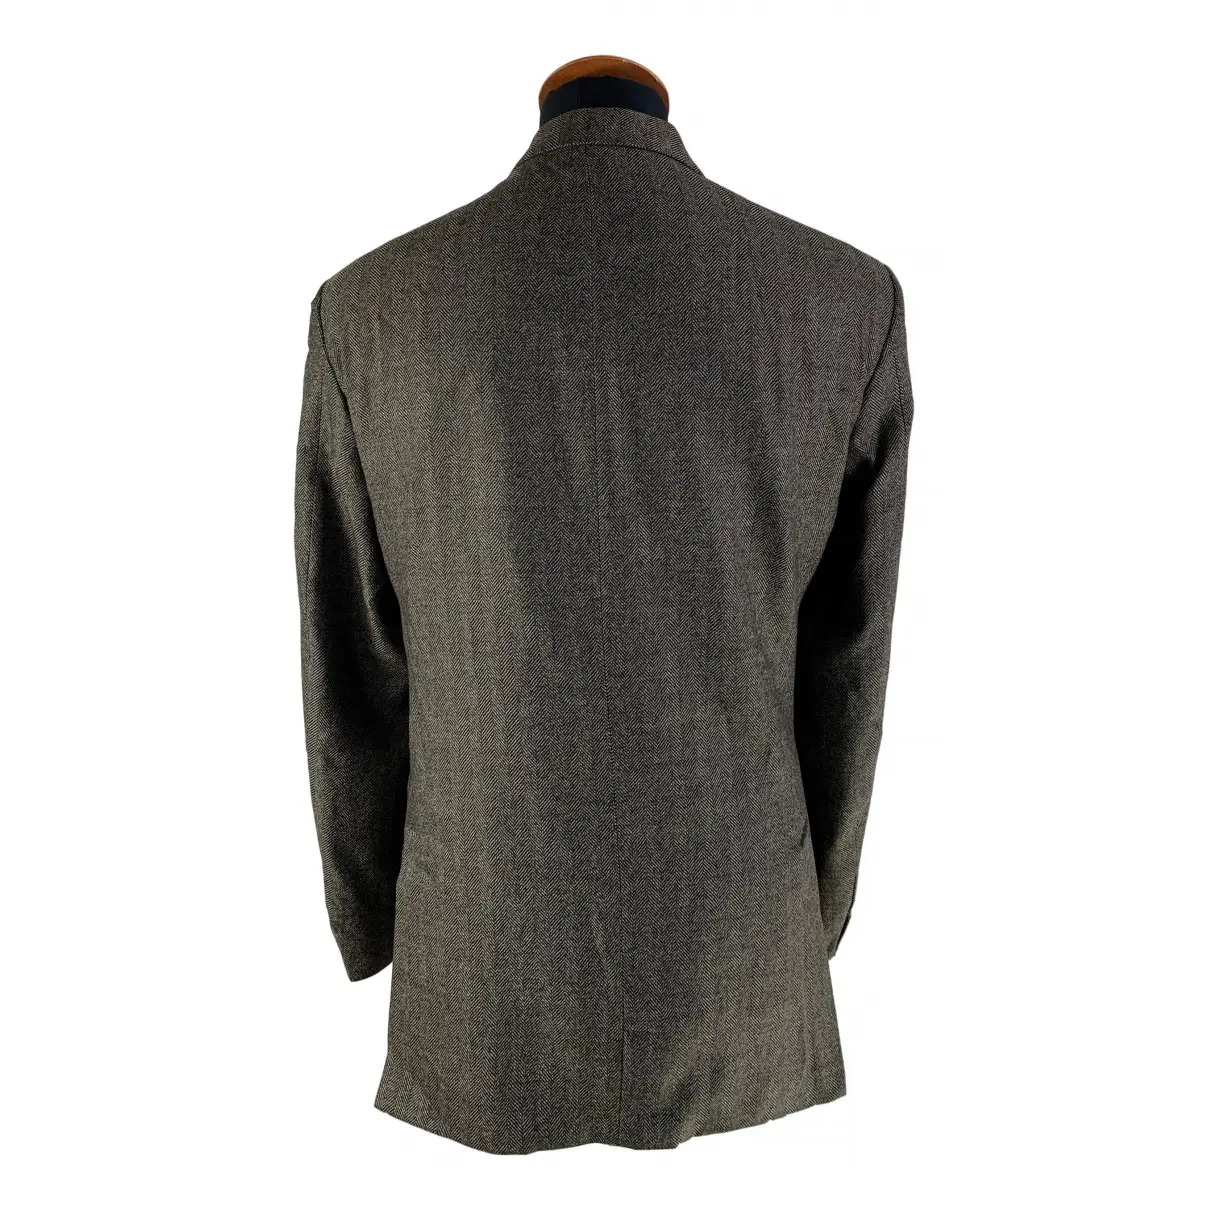 Buy Strellson Wool jacket online